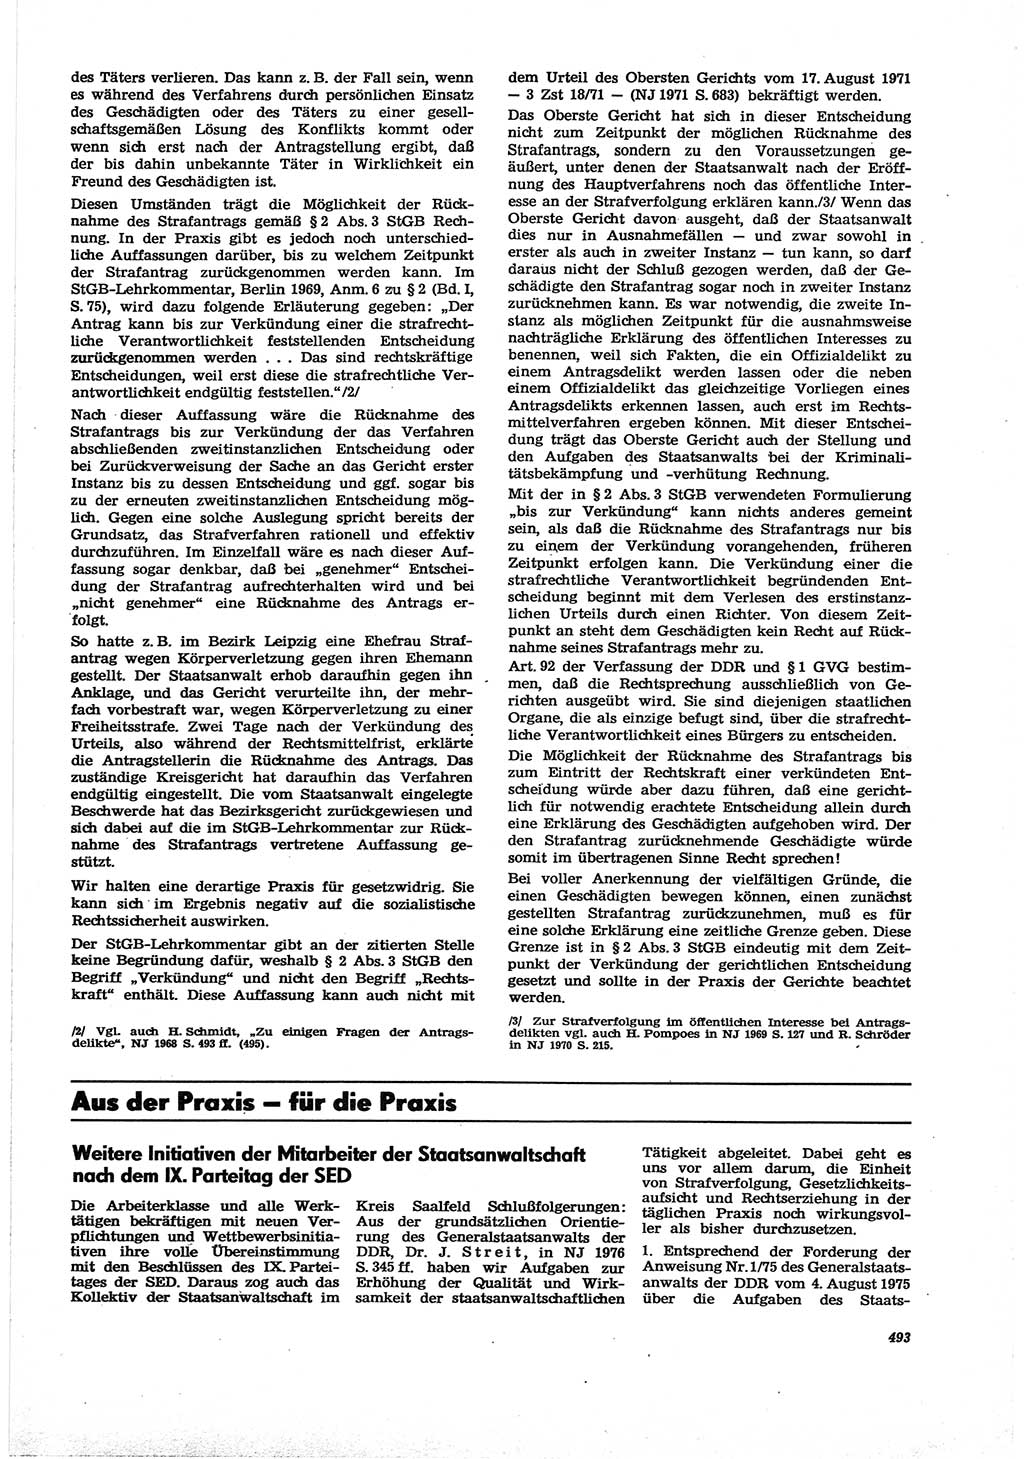 Neue Justiz (NJ), Zeitschrift für Recht und Rechtswissenschaft [Deutsche Demokratische Republik (DDR)], 30. Jahrgang 1976, Seite 493 (NJ DDR 1976, S. 493)